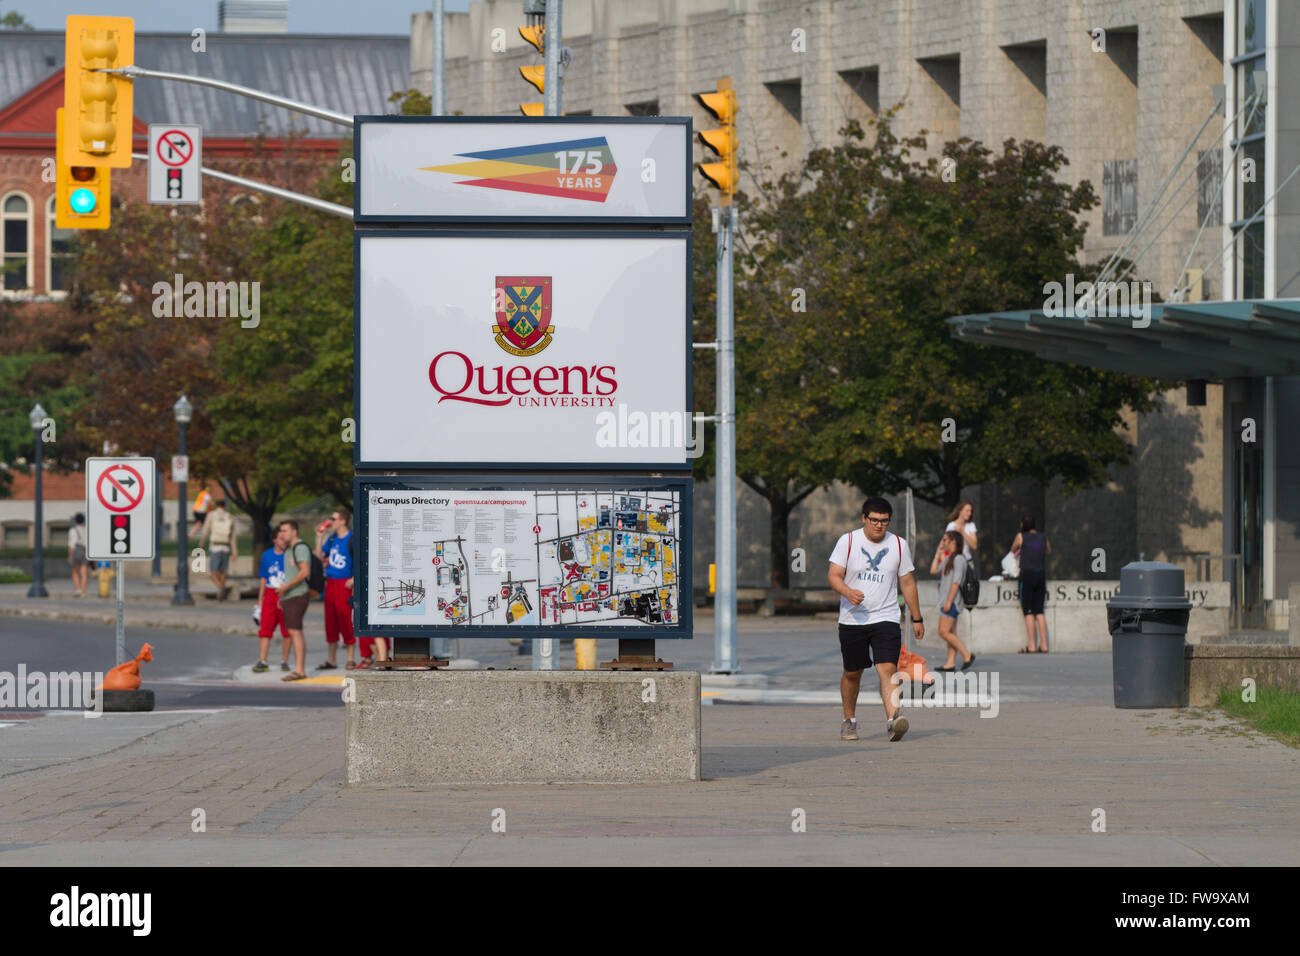 Queen's University in Kingston, Ont., on Sept. 3, 2015. Stock Photo